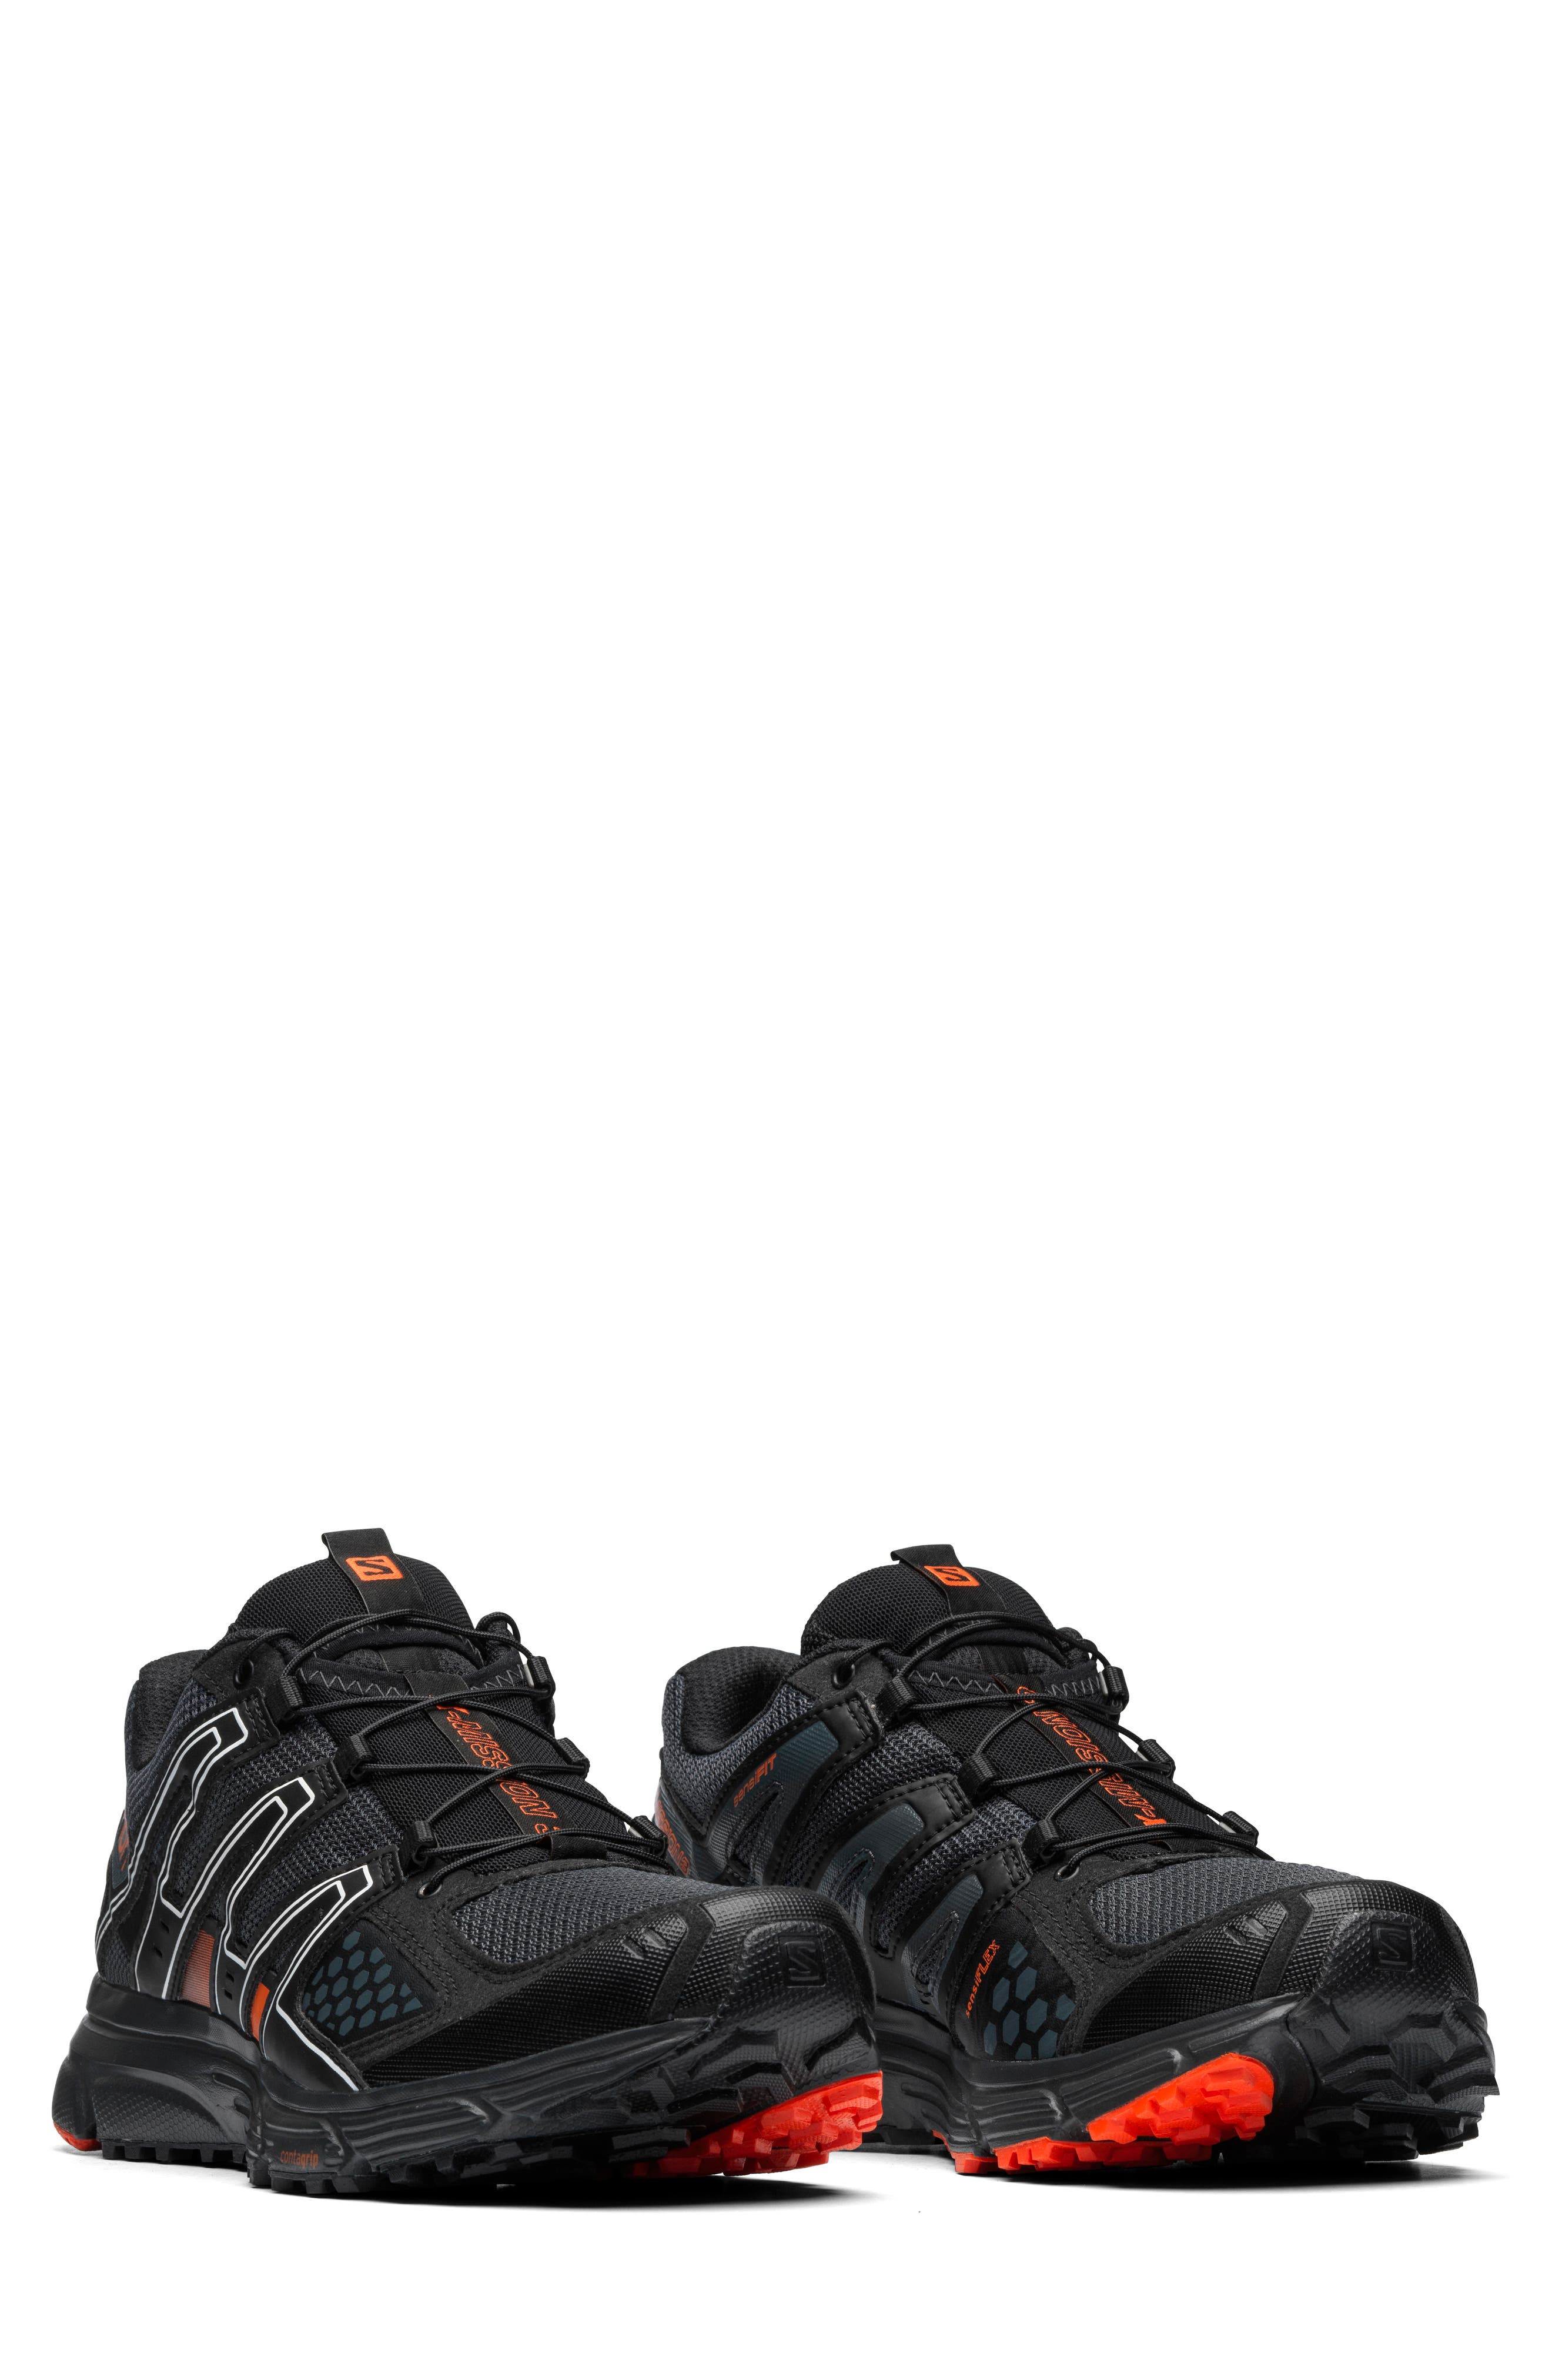 1/6 Scale Black & Red Salomon Sneakers Peg Type ZERT JTFA  Black & Tan Alpha